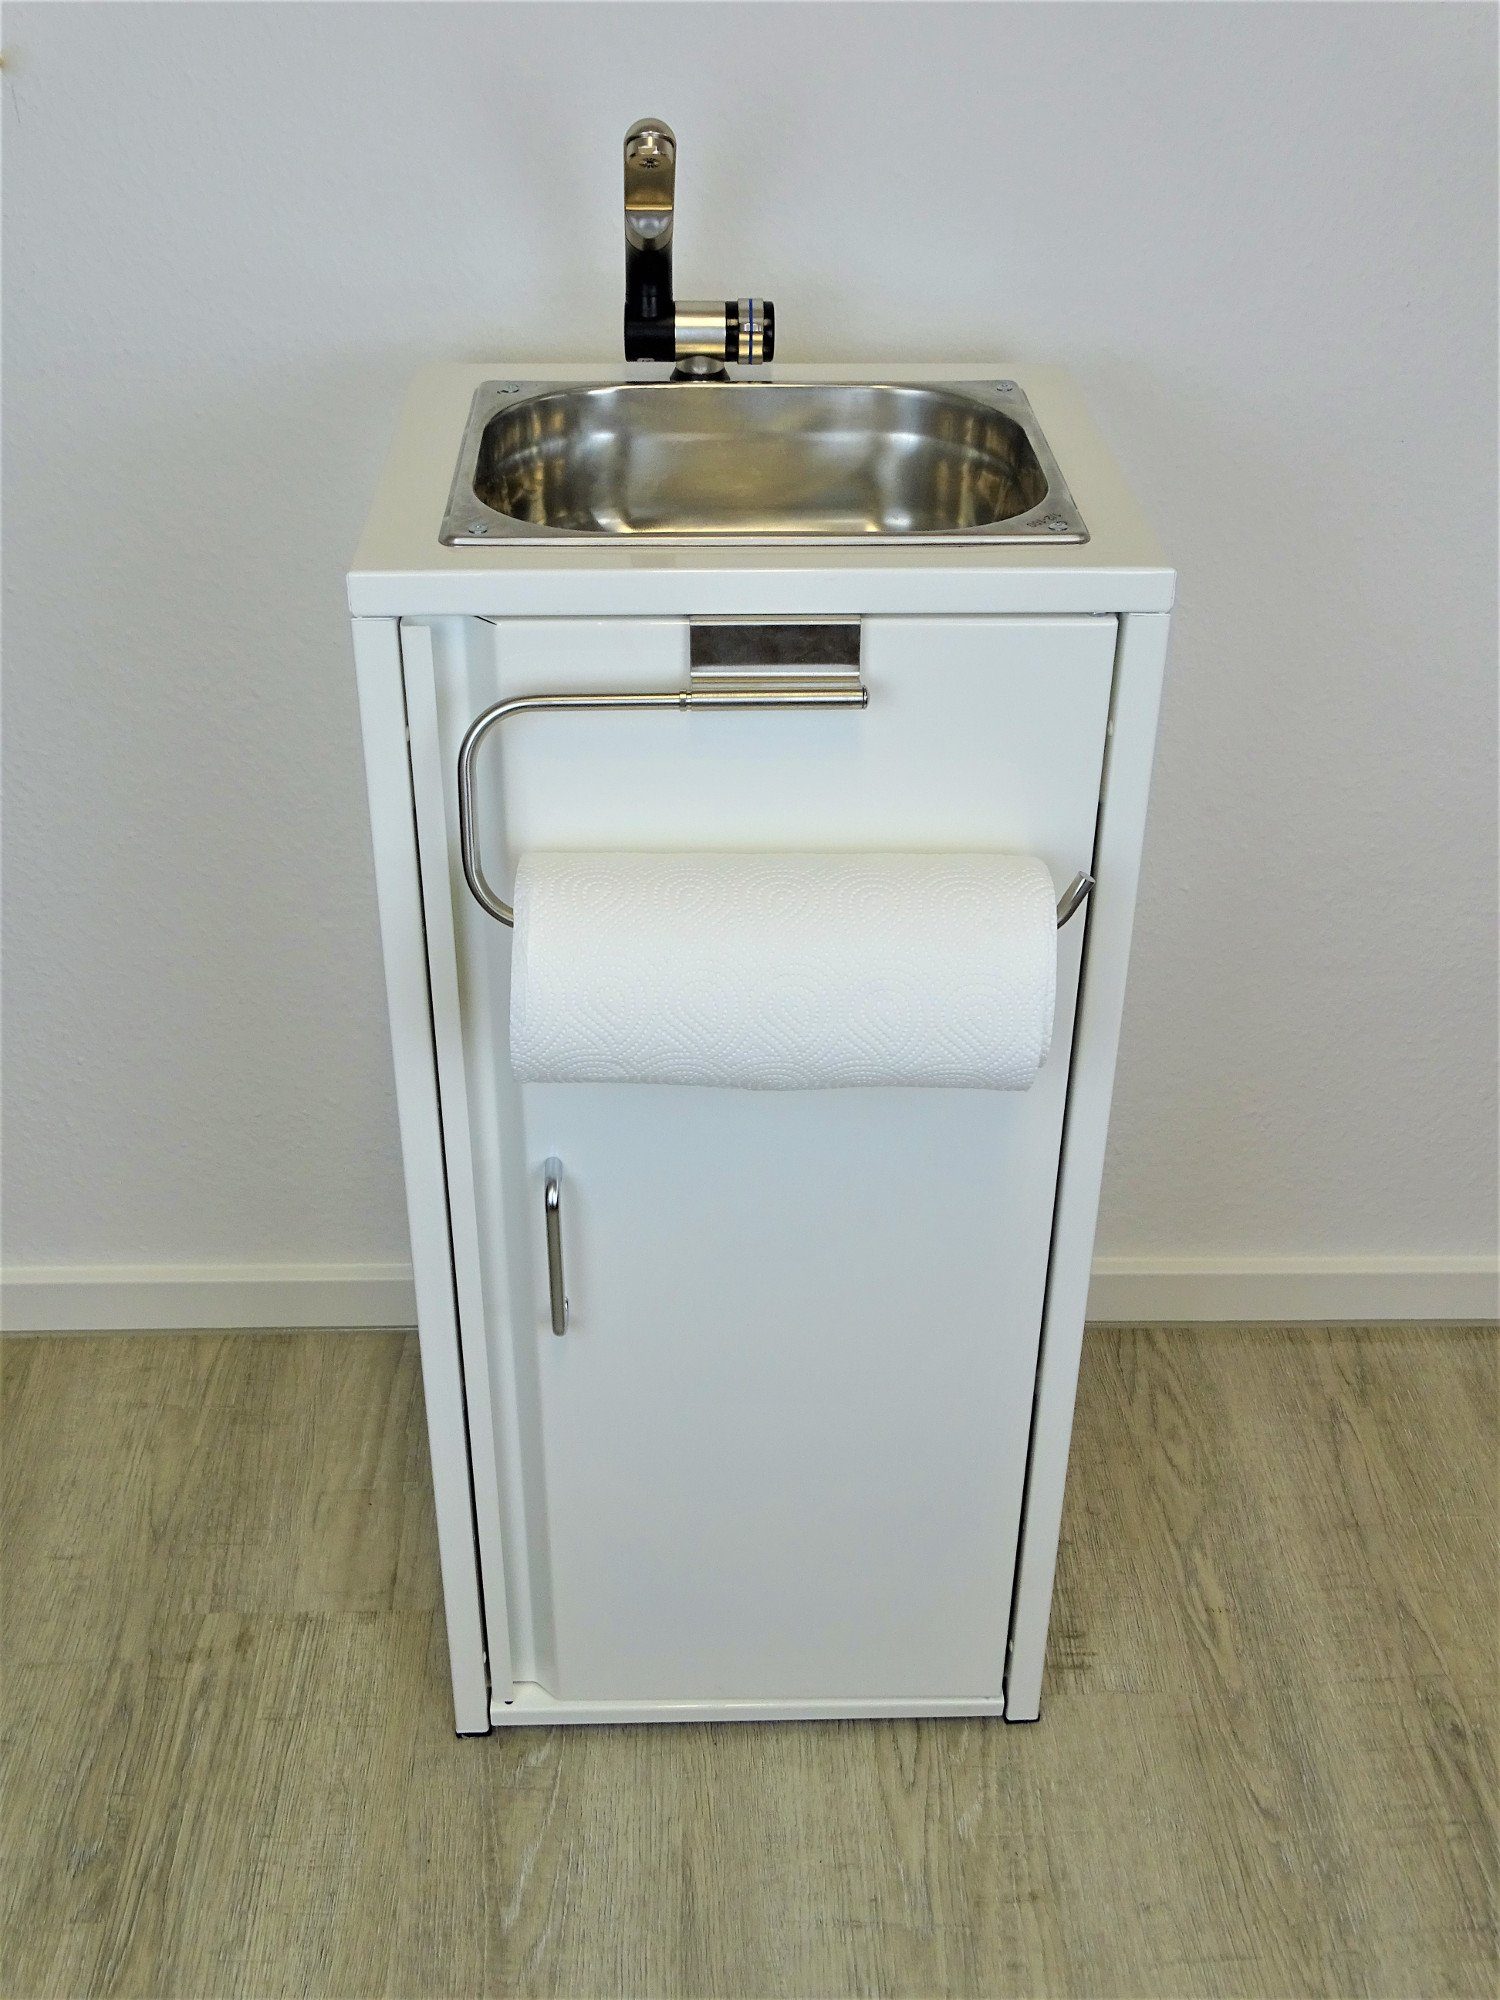 SRM Design Waschbecken Mobiles Waschbecken Spülbecken Weiß mit Küchenrollenhalter